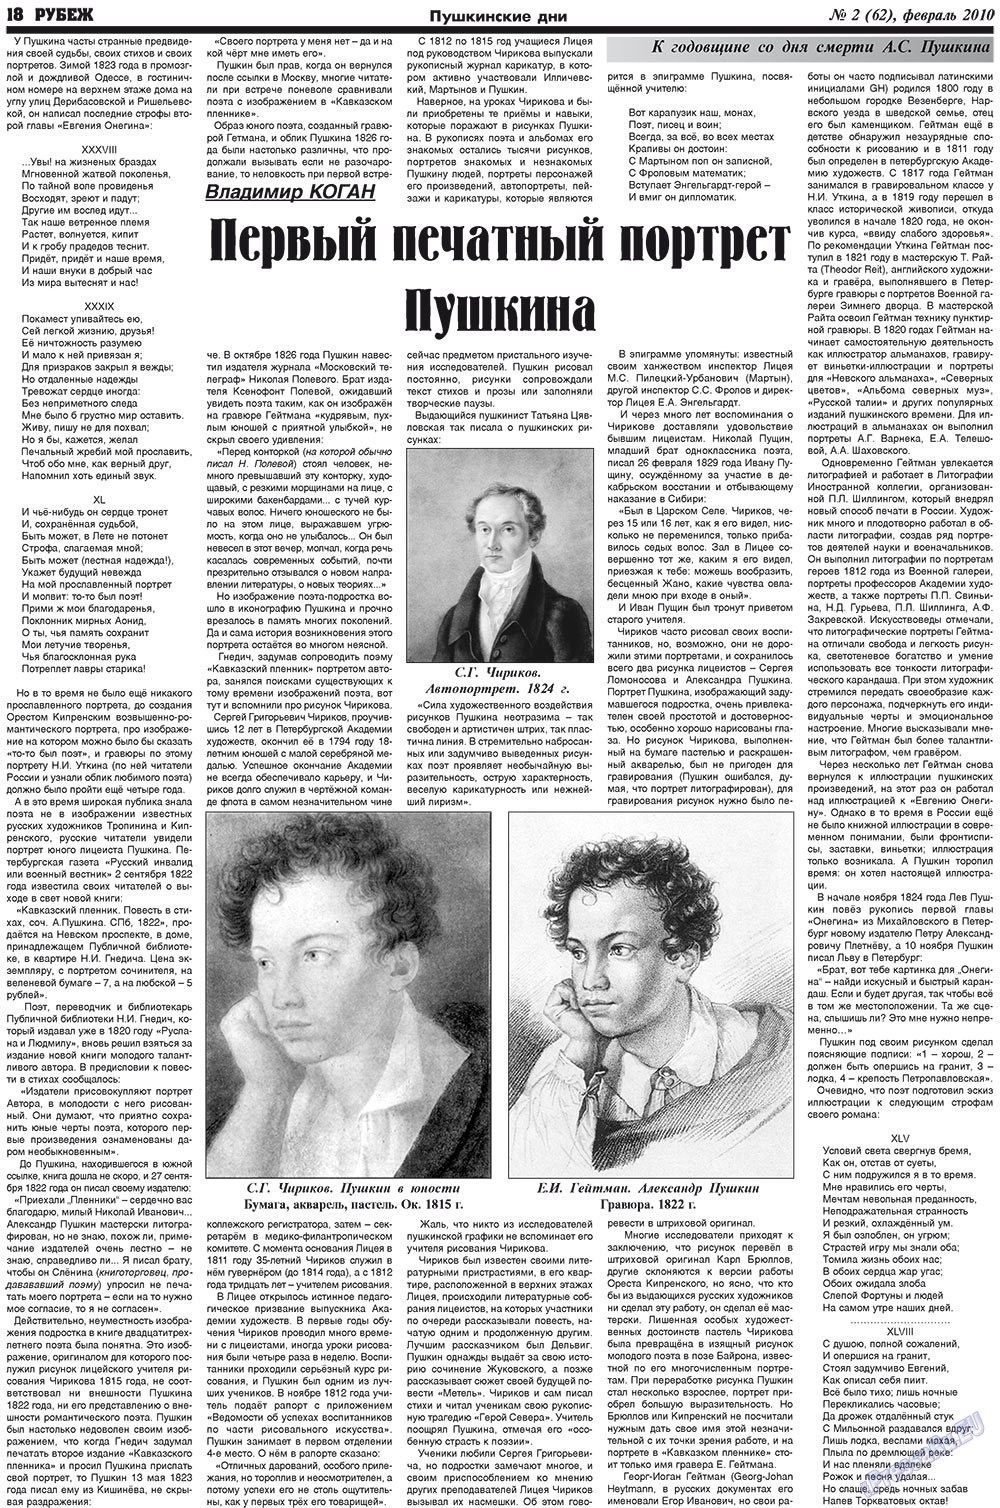 Рубеж (газета). 2010 год, номер 2, стр. 18